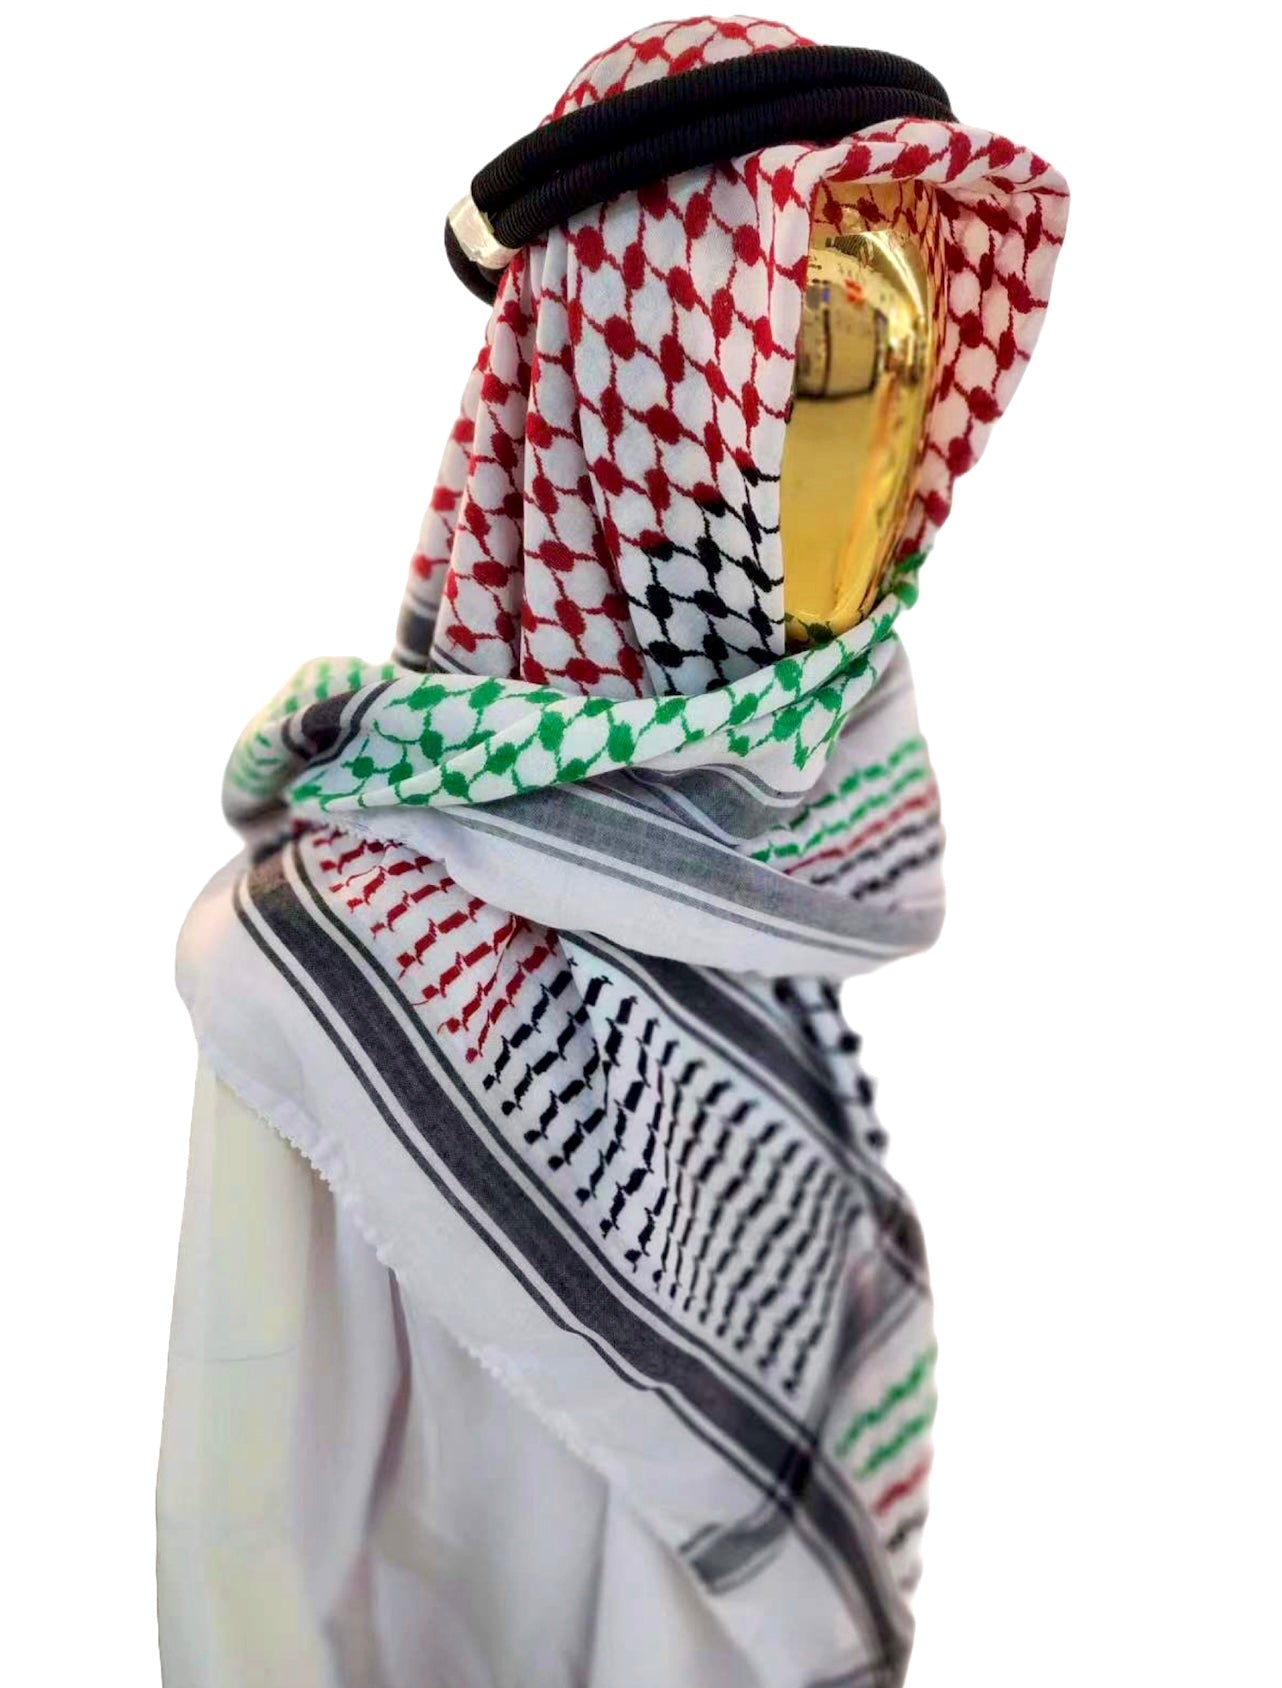 Kufiya/Keffiyeh met Palestina kleuren 127x127 cm